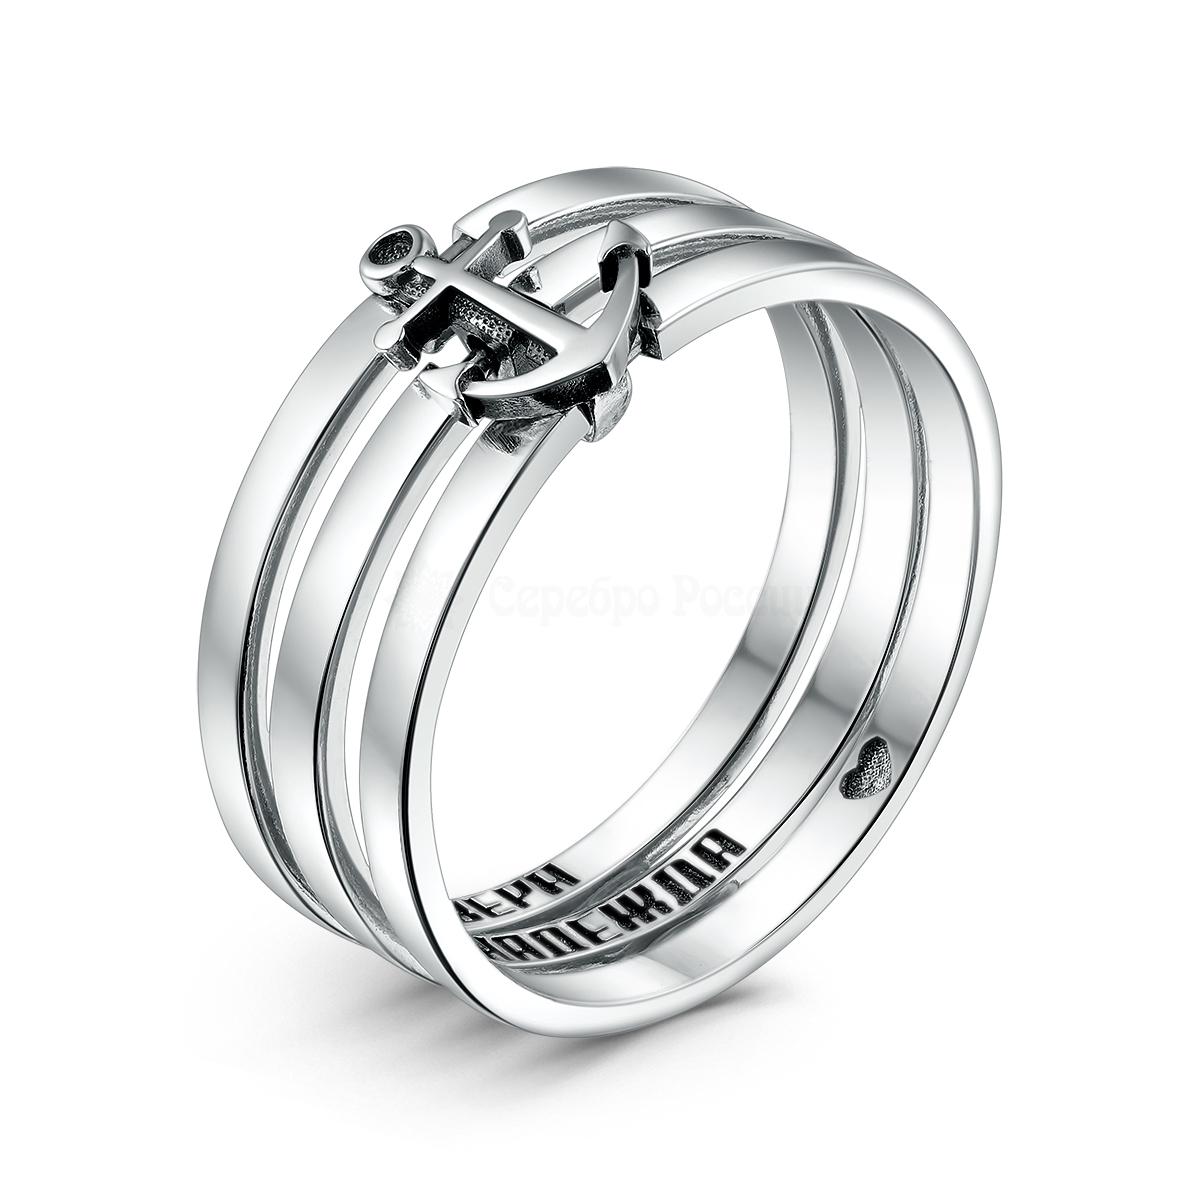 Кольцо тройное из чернёного серебра с якорем - Вера, Надежда, Любовь К-1112ч К-1112ч